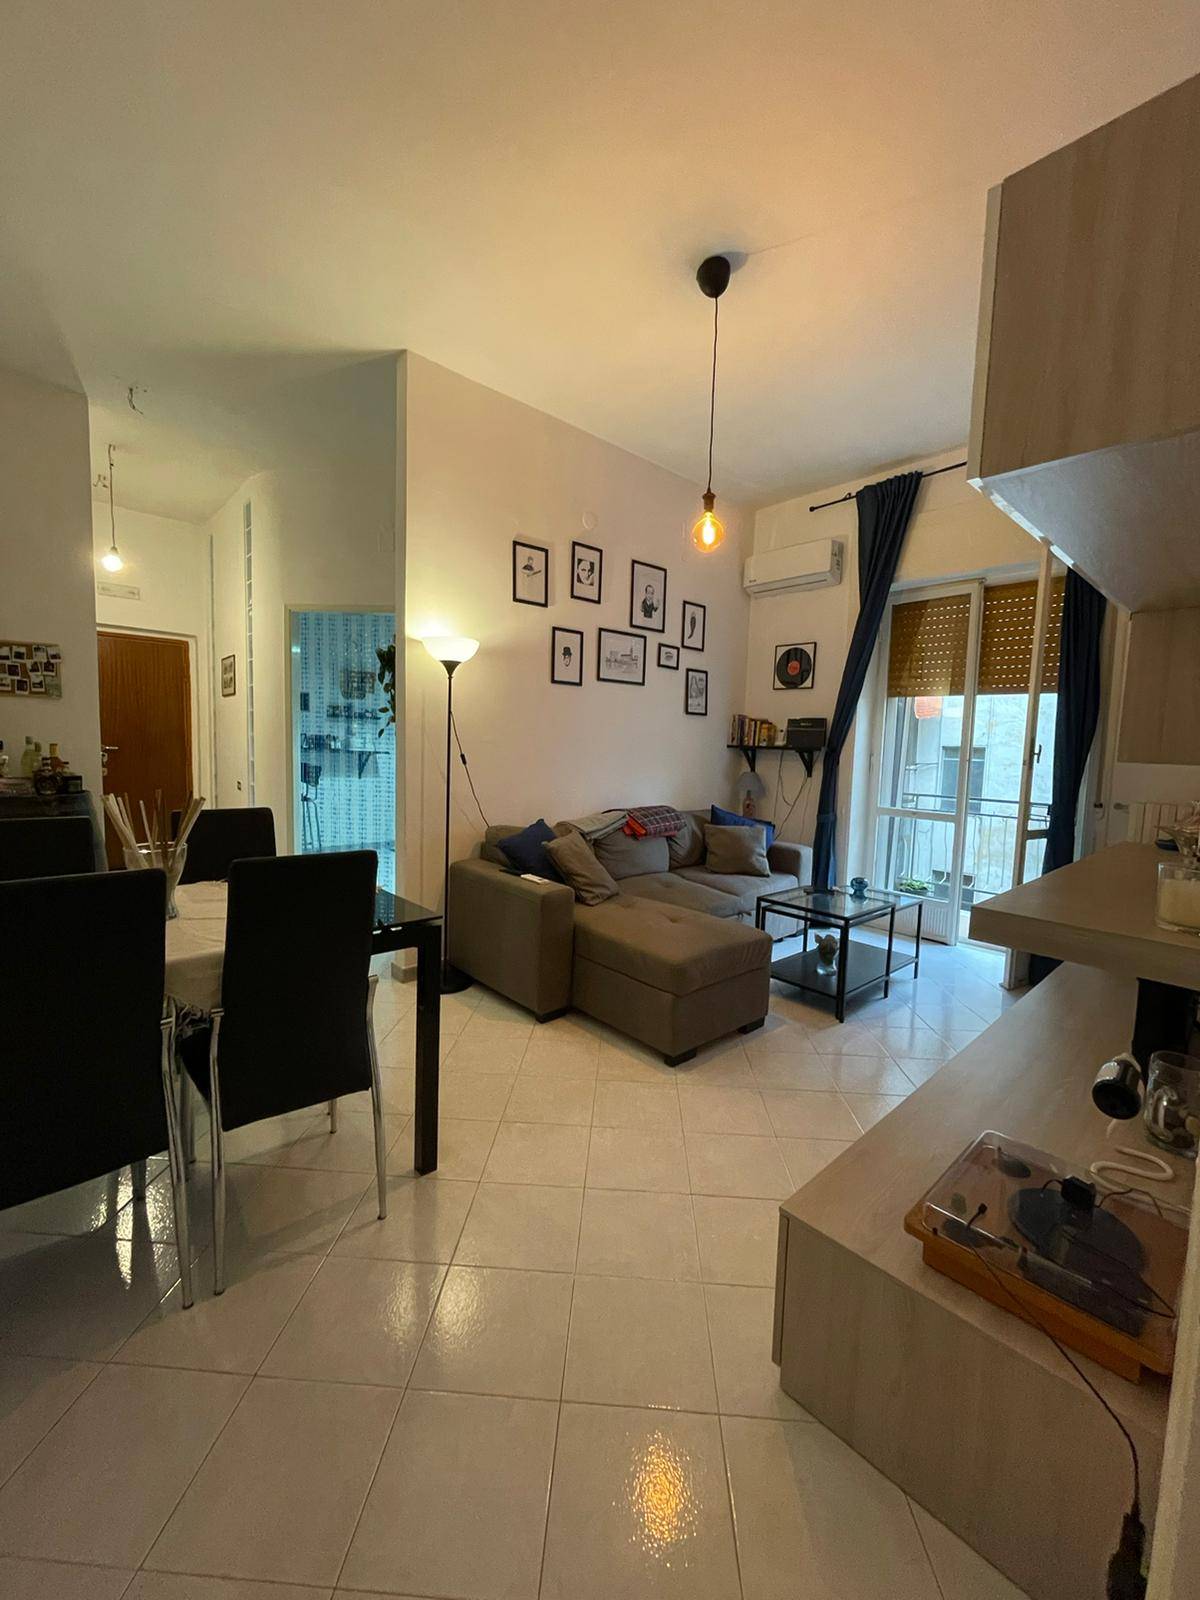 Appartamento in vendita a Nocera Inferiore, 2 locali, prezzo € 110.000 | PortaleAgenzieImmobiliari.it